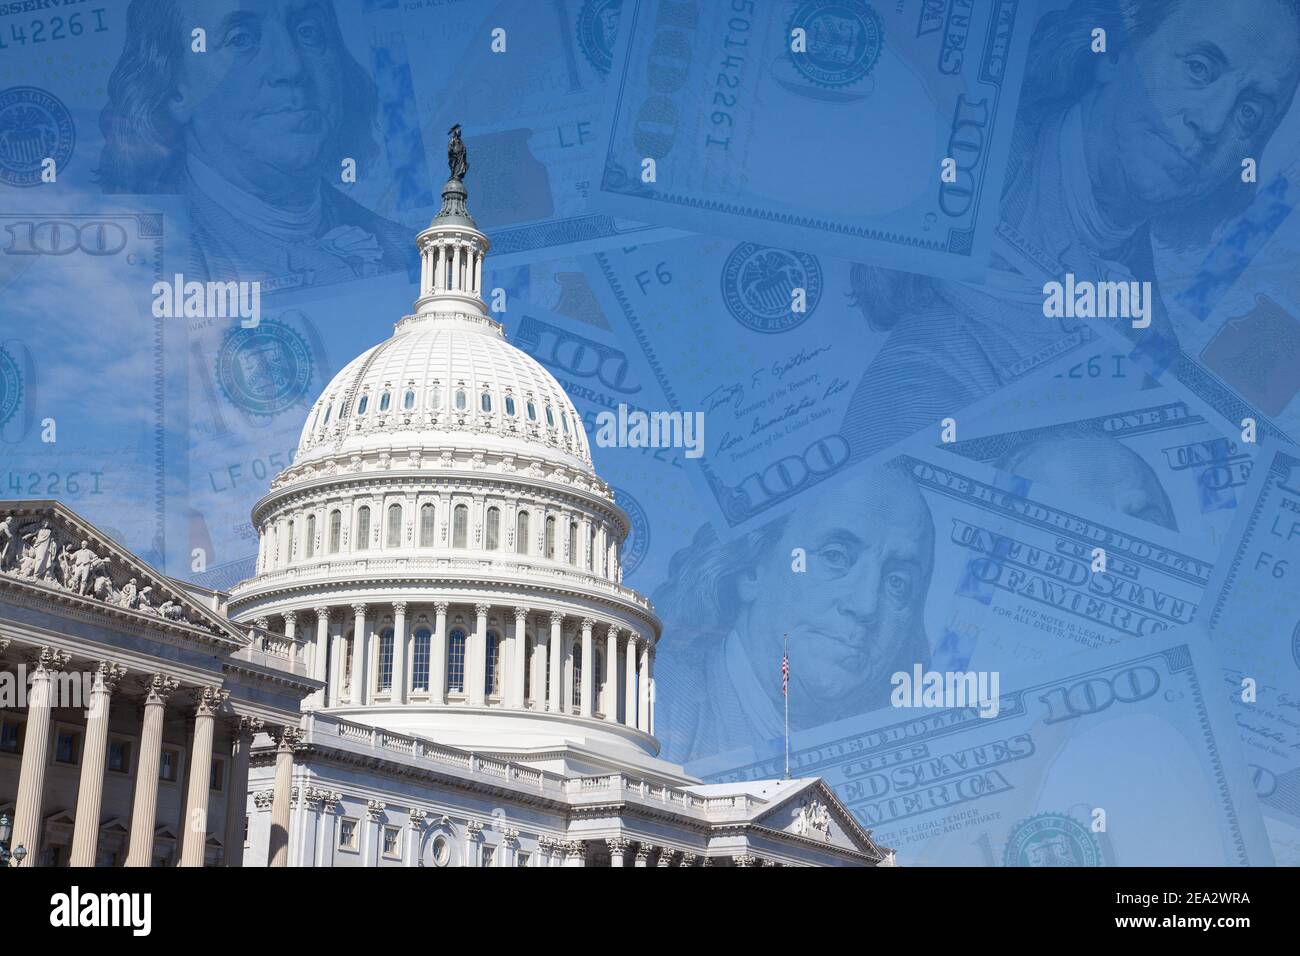 Capitole NATIONAL DES ÉTATS-UNIS à Washington, DC. La construction du Congrès des États-Unis est sur le fond de 100 dollars de factures. Collage Banque D'Images